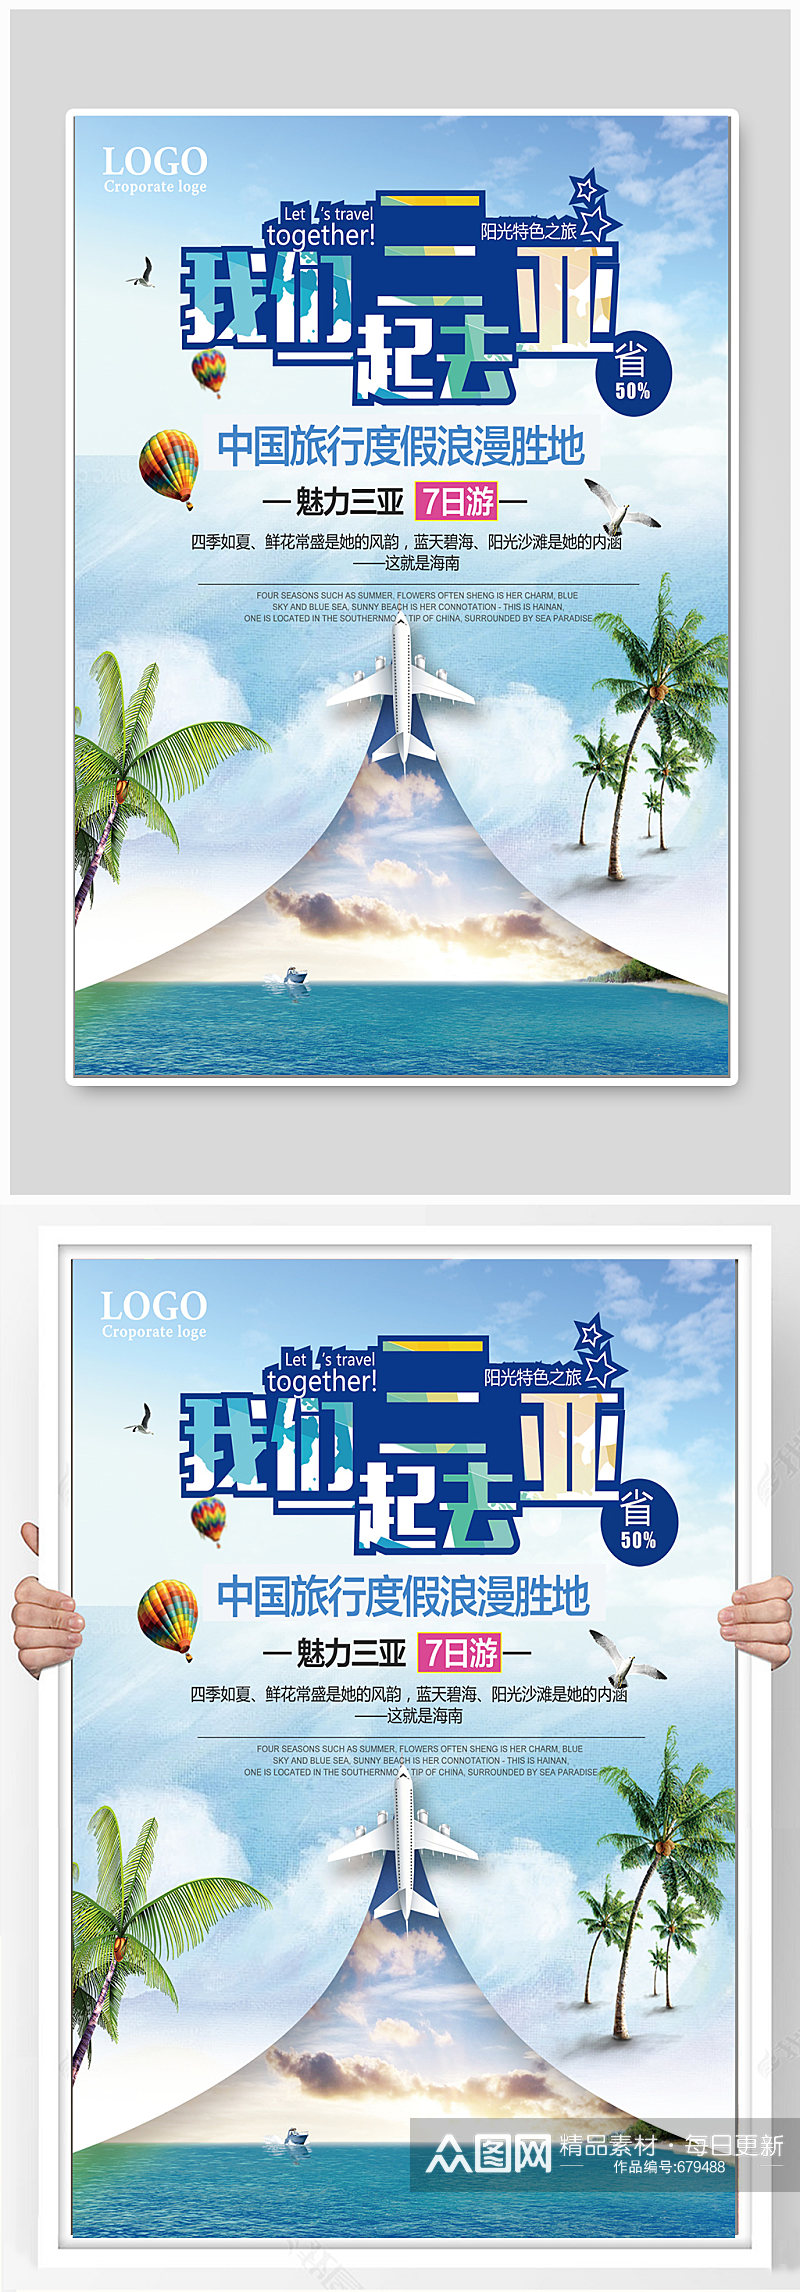 三亚旅游海报设计制作素材